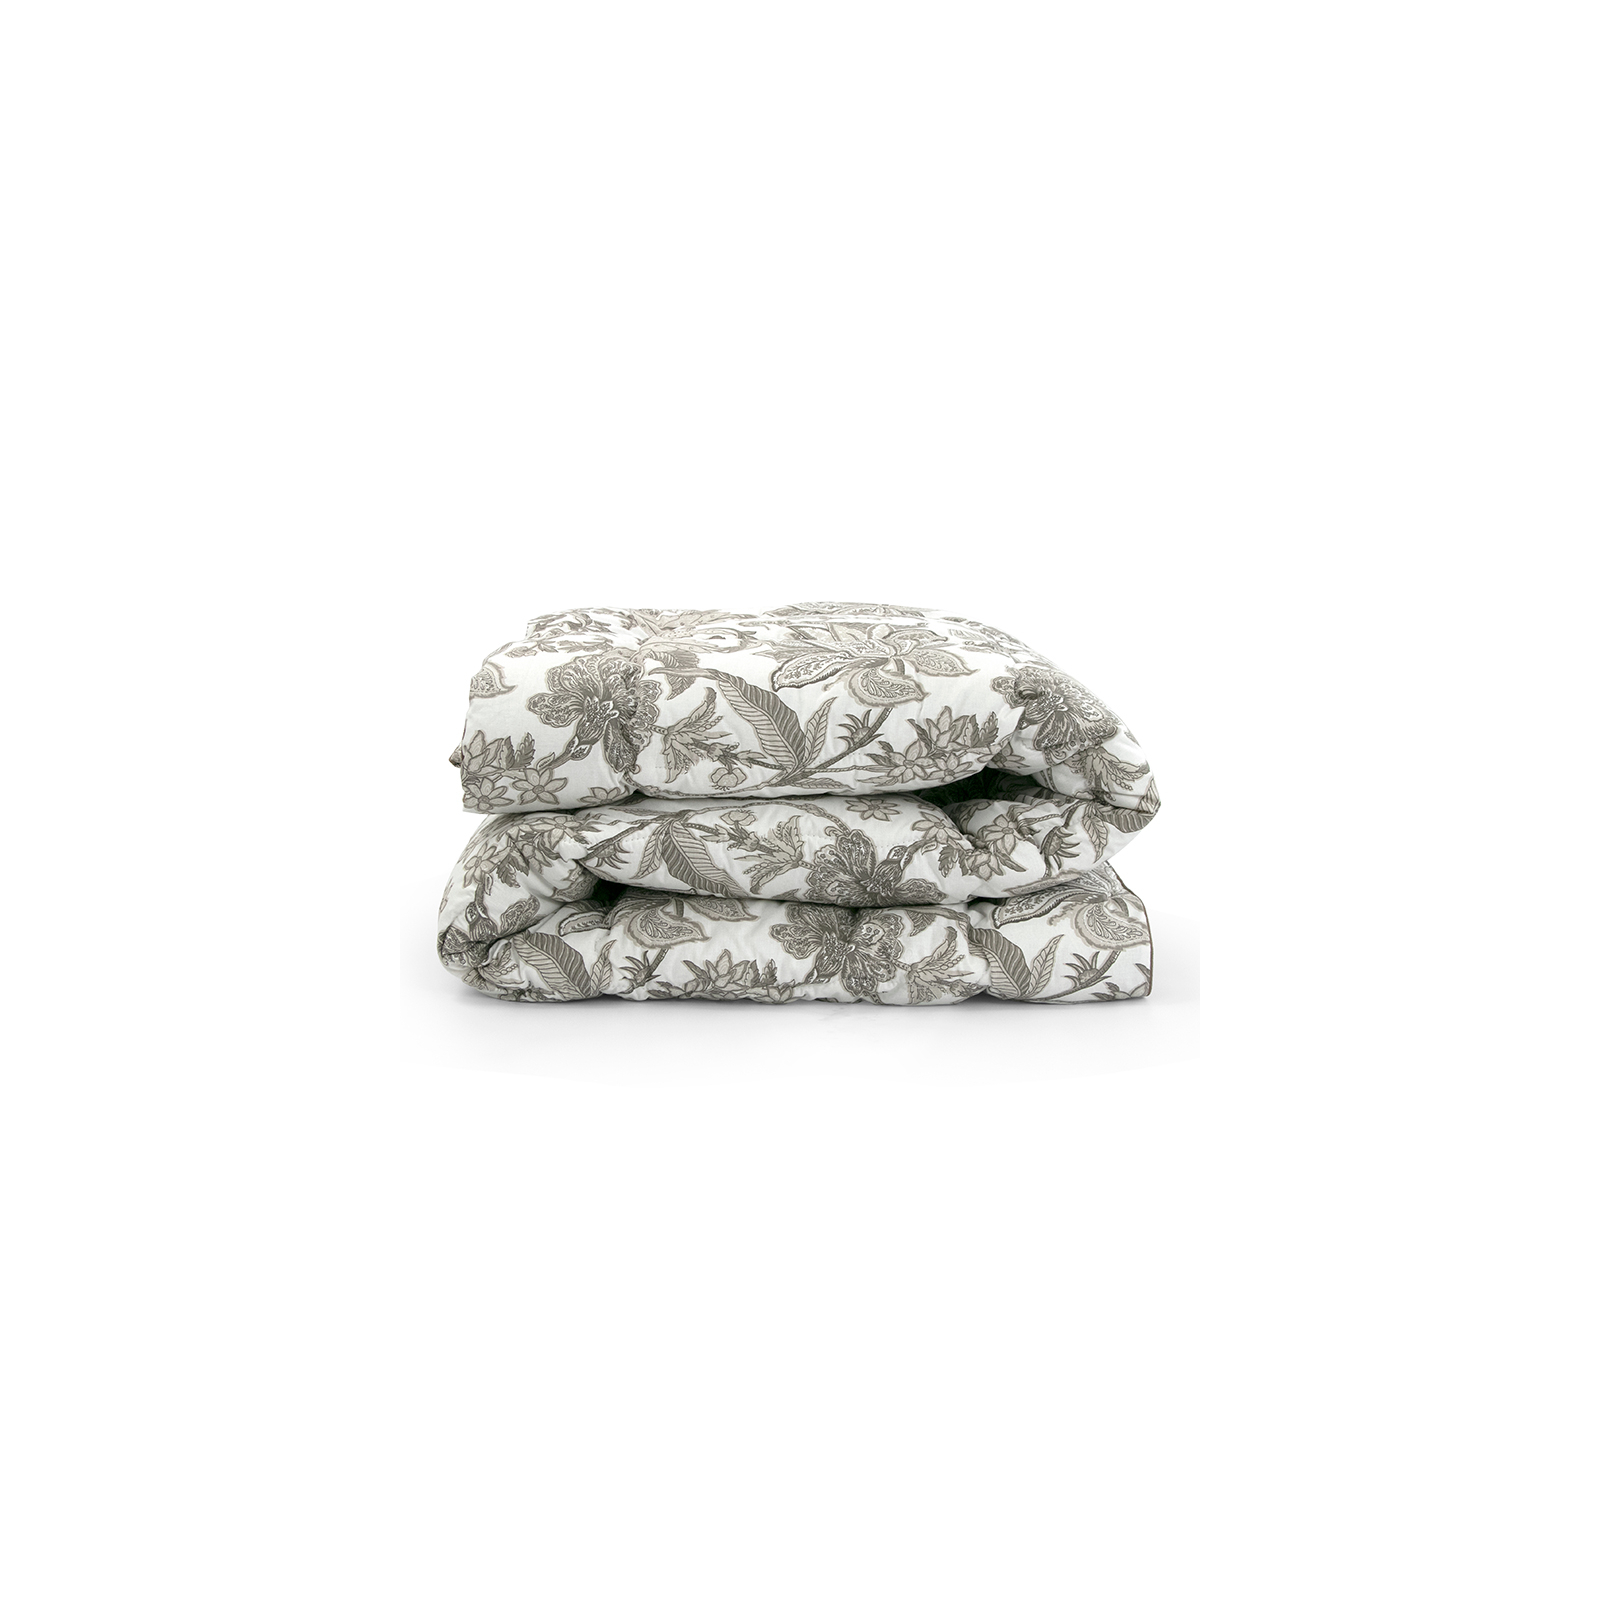 Одеяло Руно шерстяное Luxury зима 140х205 (321.02ШУ_Luxury) изображение 3